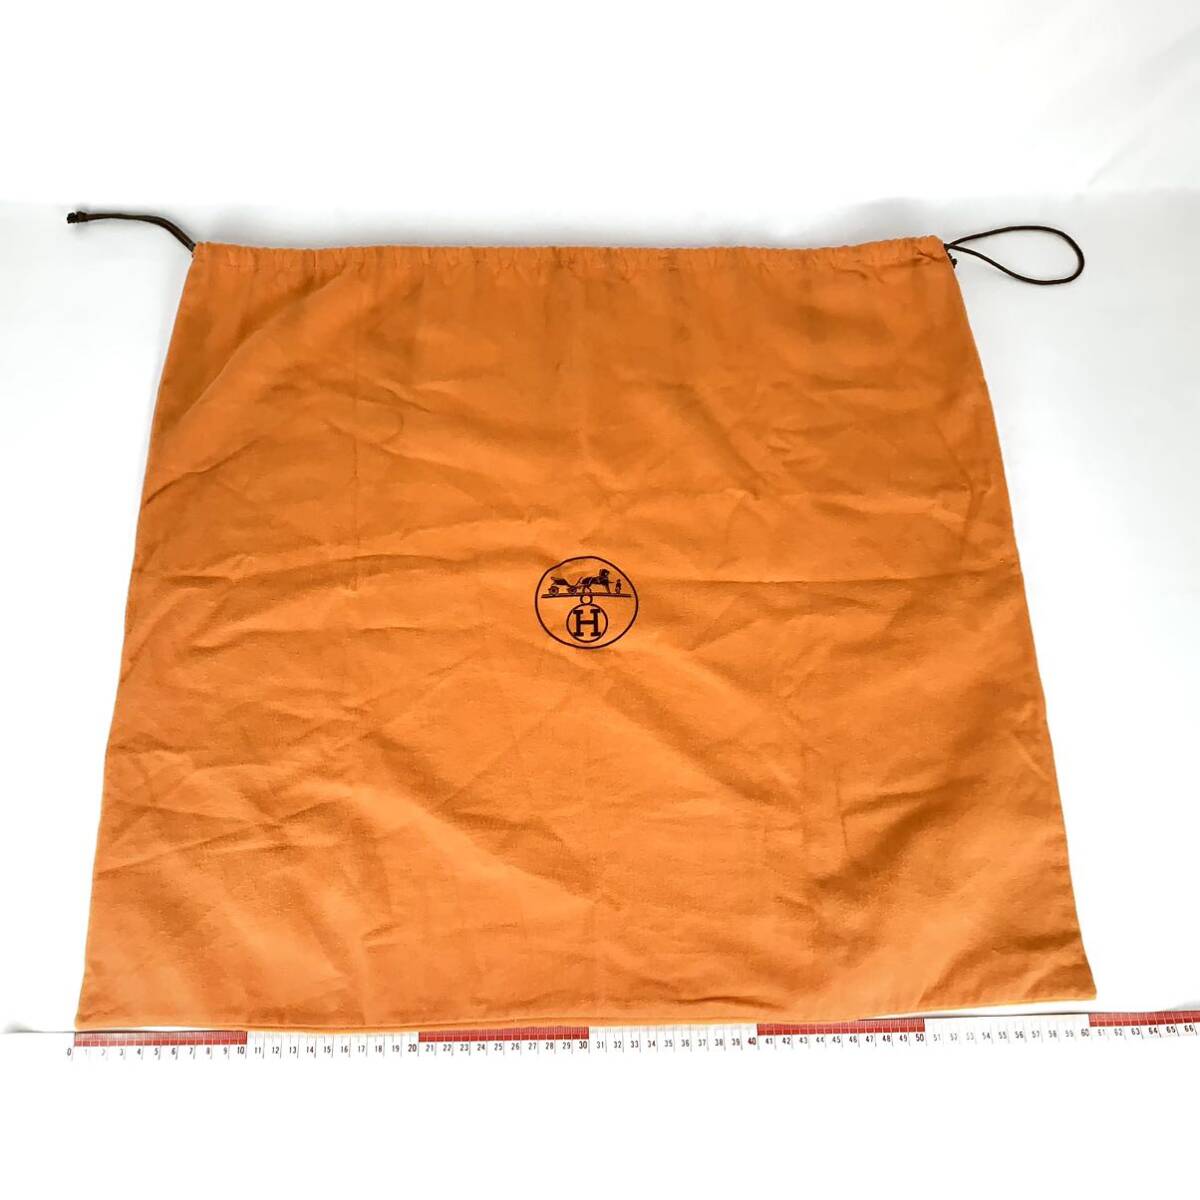 HERMES エルメス 保存袋 60×55 大型 特大旧型 巾着袋 付属品 バッグ用 袋 オレンジ_画像2